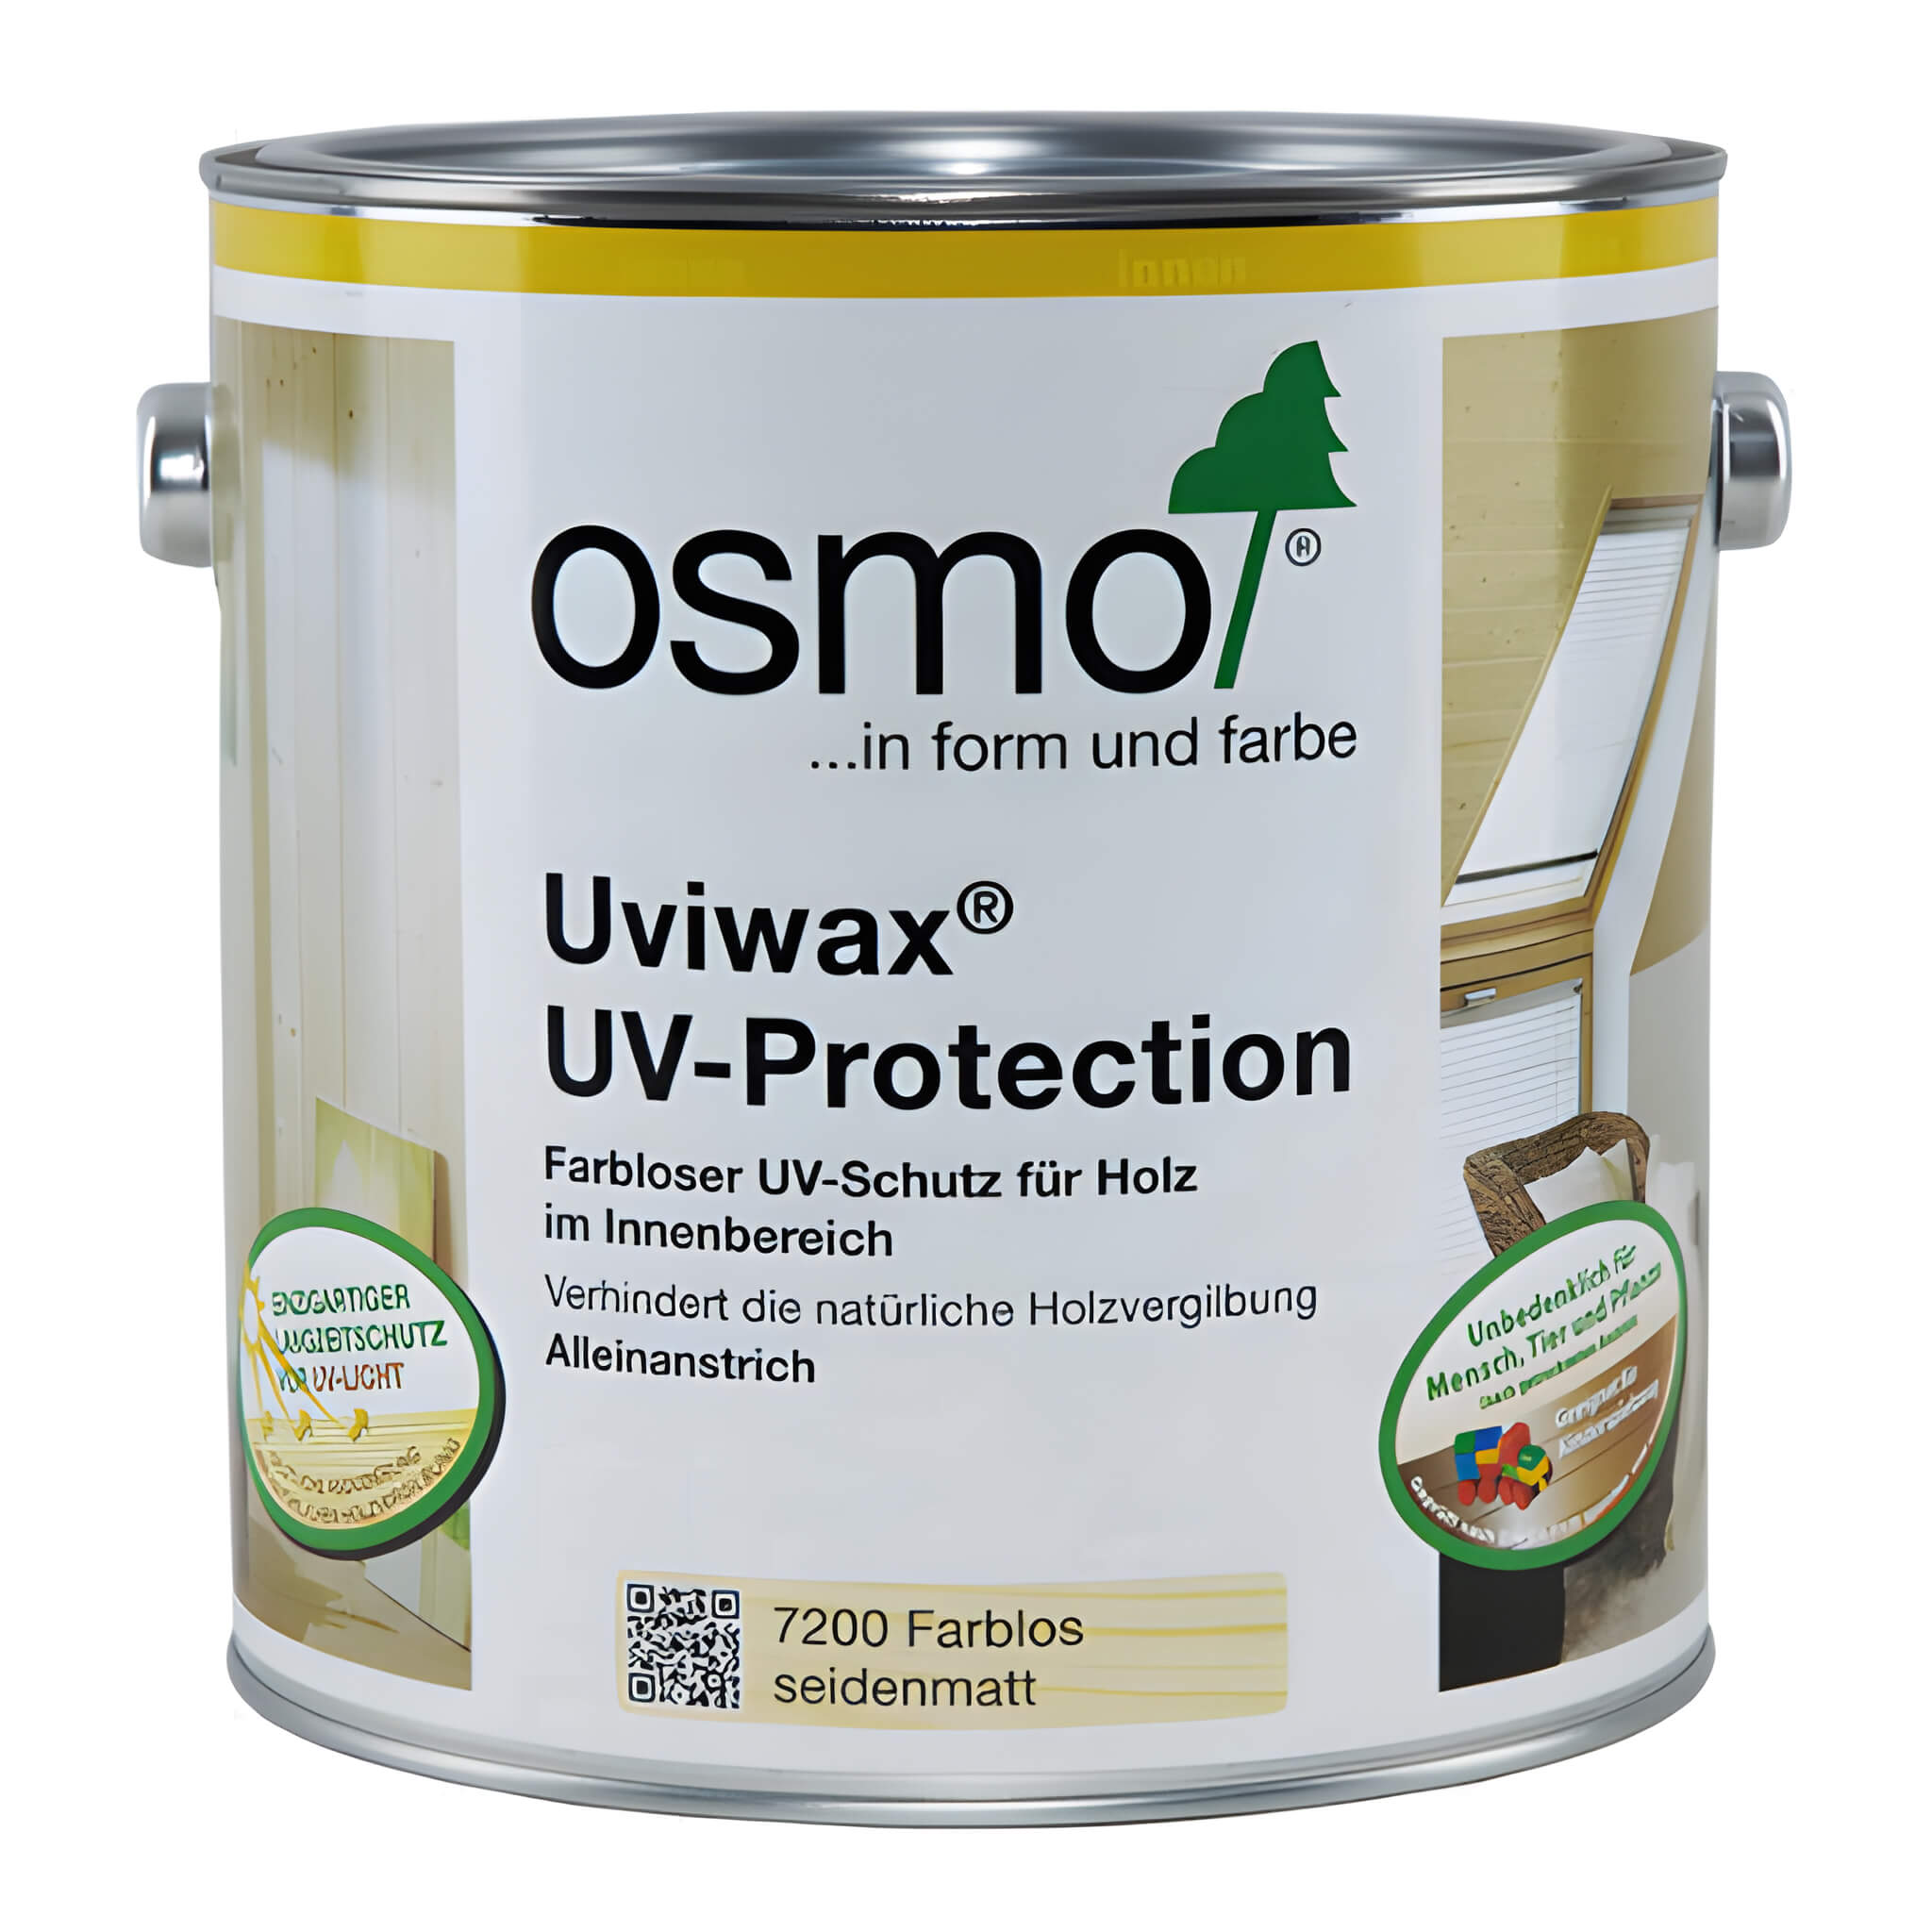 OSMO UVIWAX UV-Protection, Can, Tin